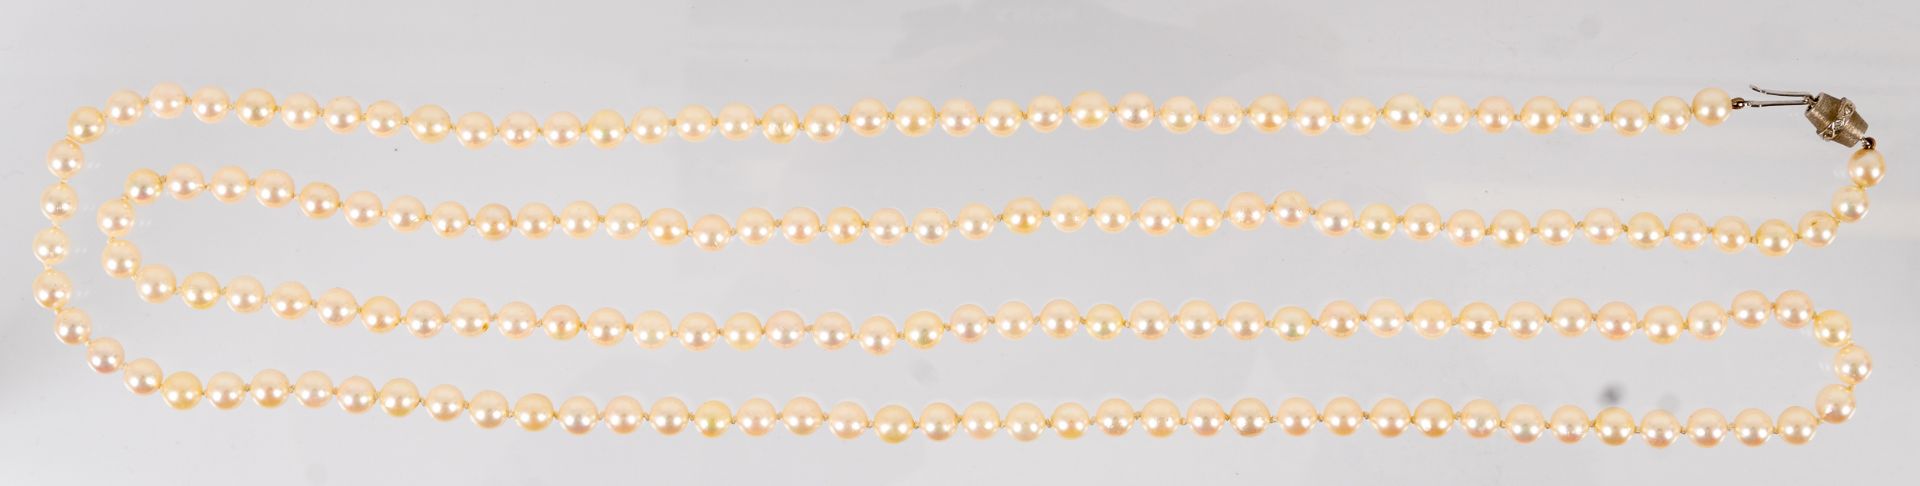 Sehr lange, elegante Perlenkette mit 585er Weißgold-Sicherheitsverschluss mit Brillantbesatz. Perle